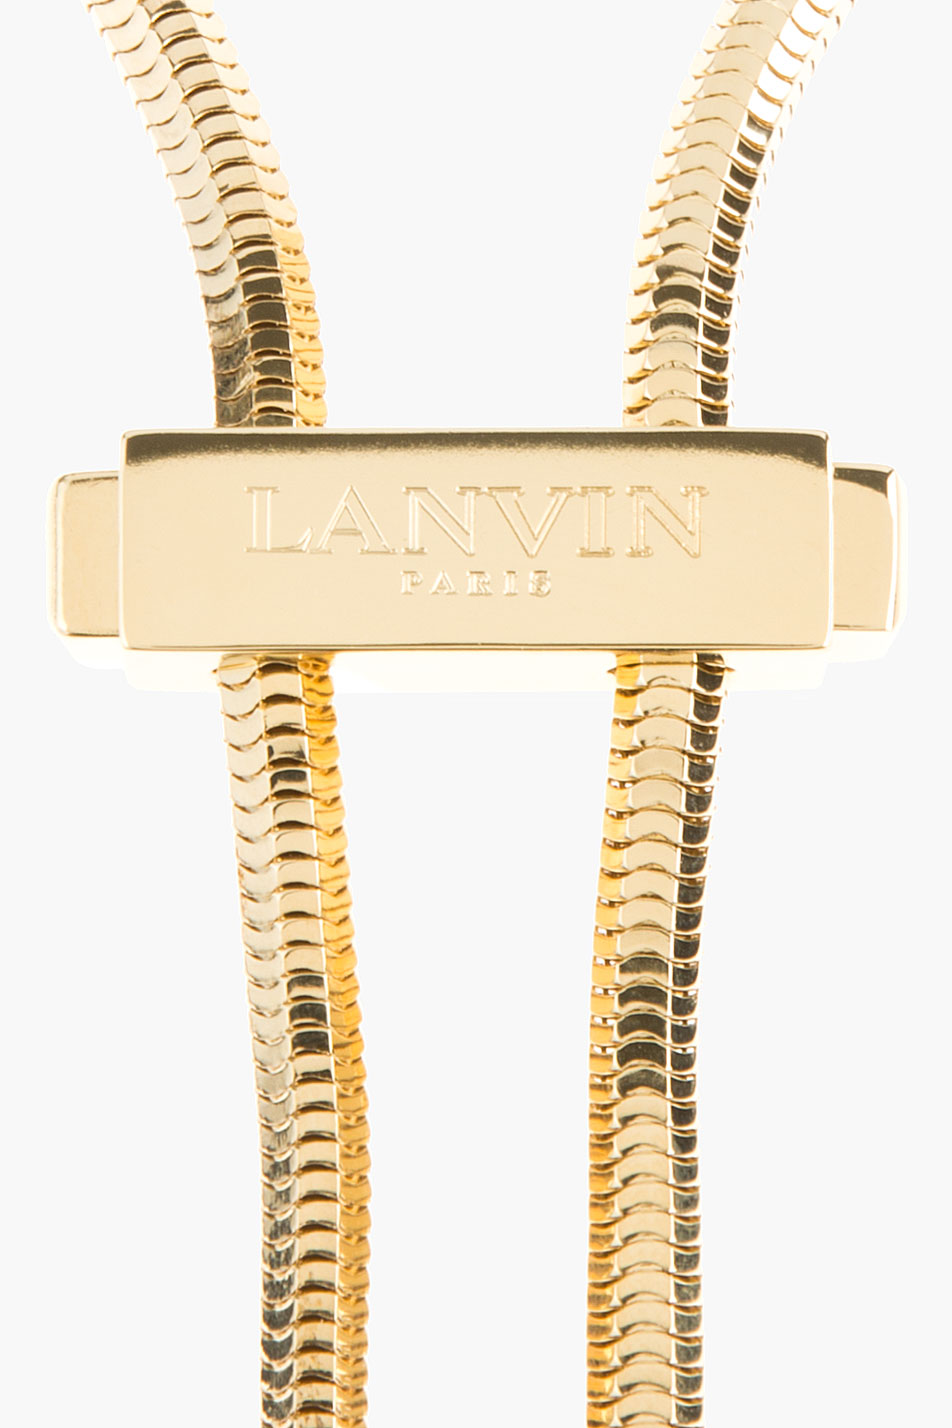 Lanvin Lanyard Bolo Tie in Gold (Metallic) | Lyst